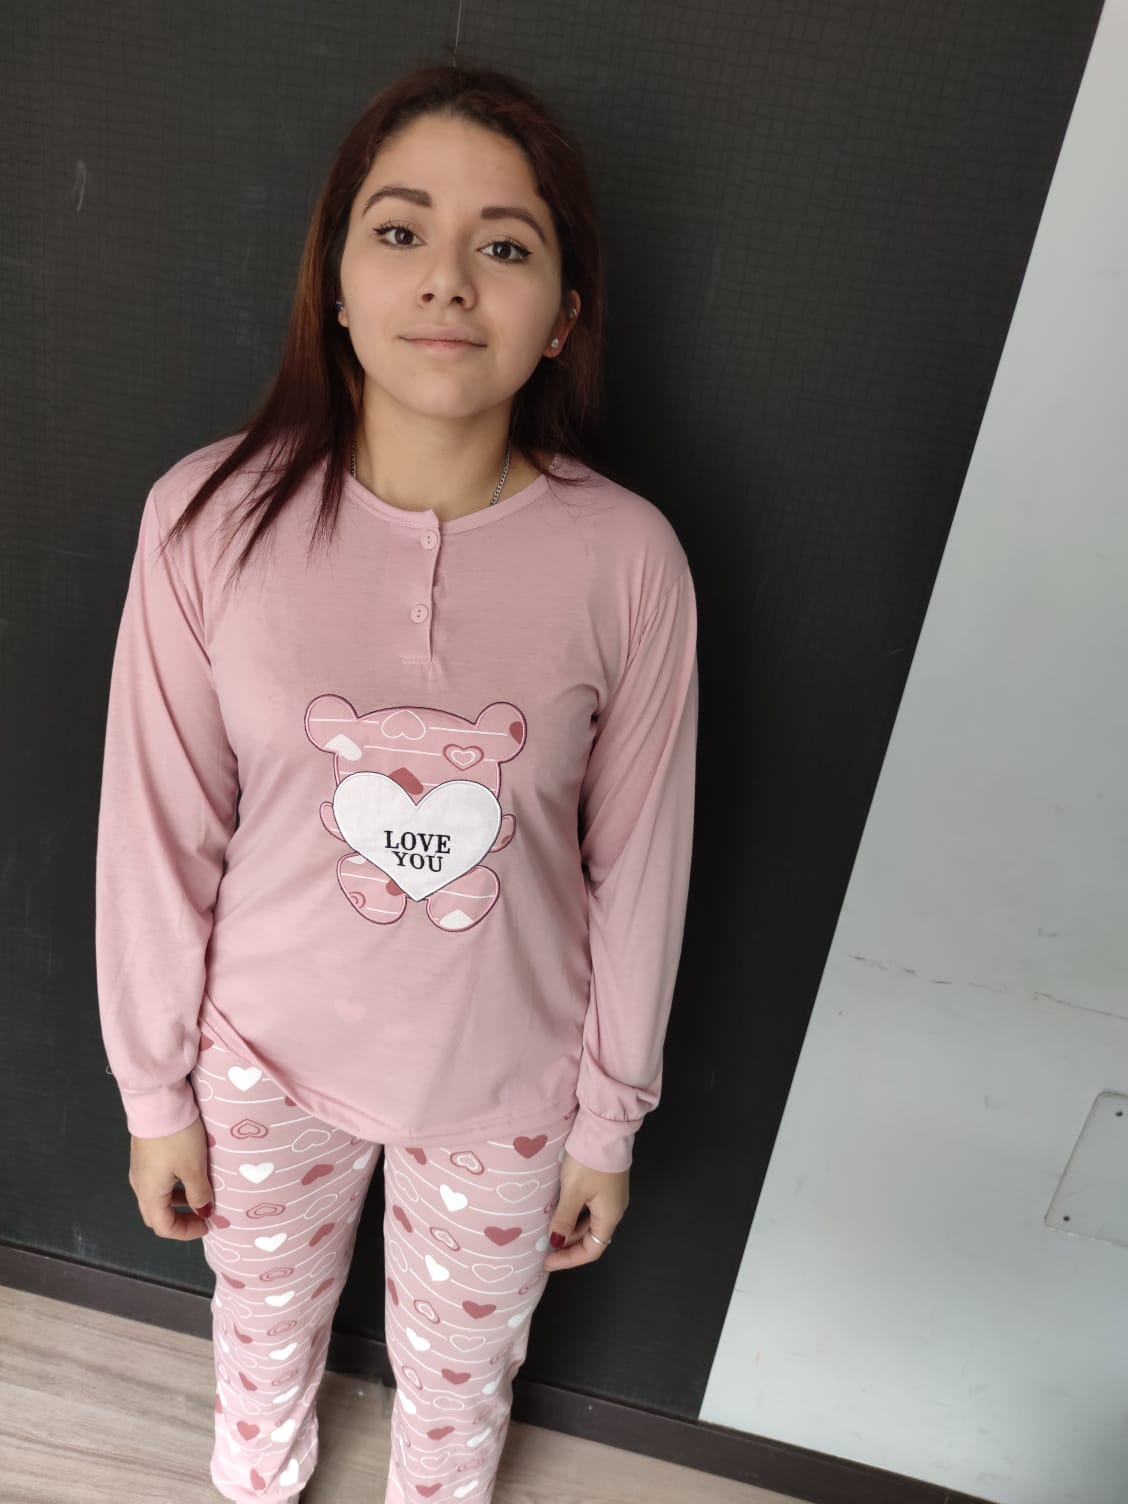 medallista consumidor Solicitante Pijama Mujer Love Rosa | Pijamas baratos online en EstiloHogar.es